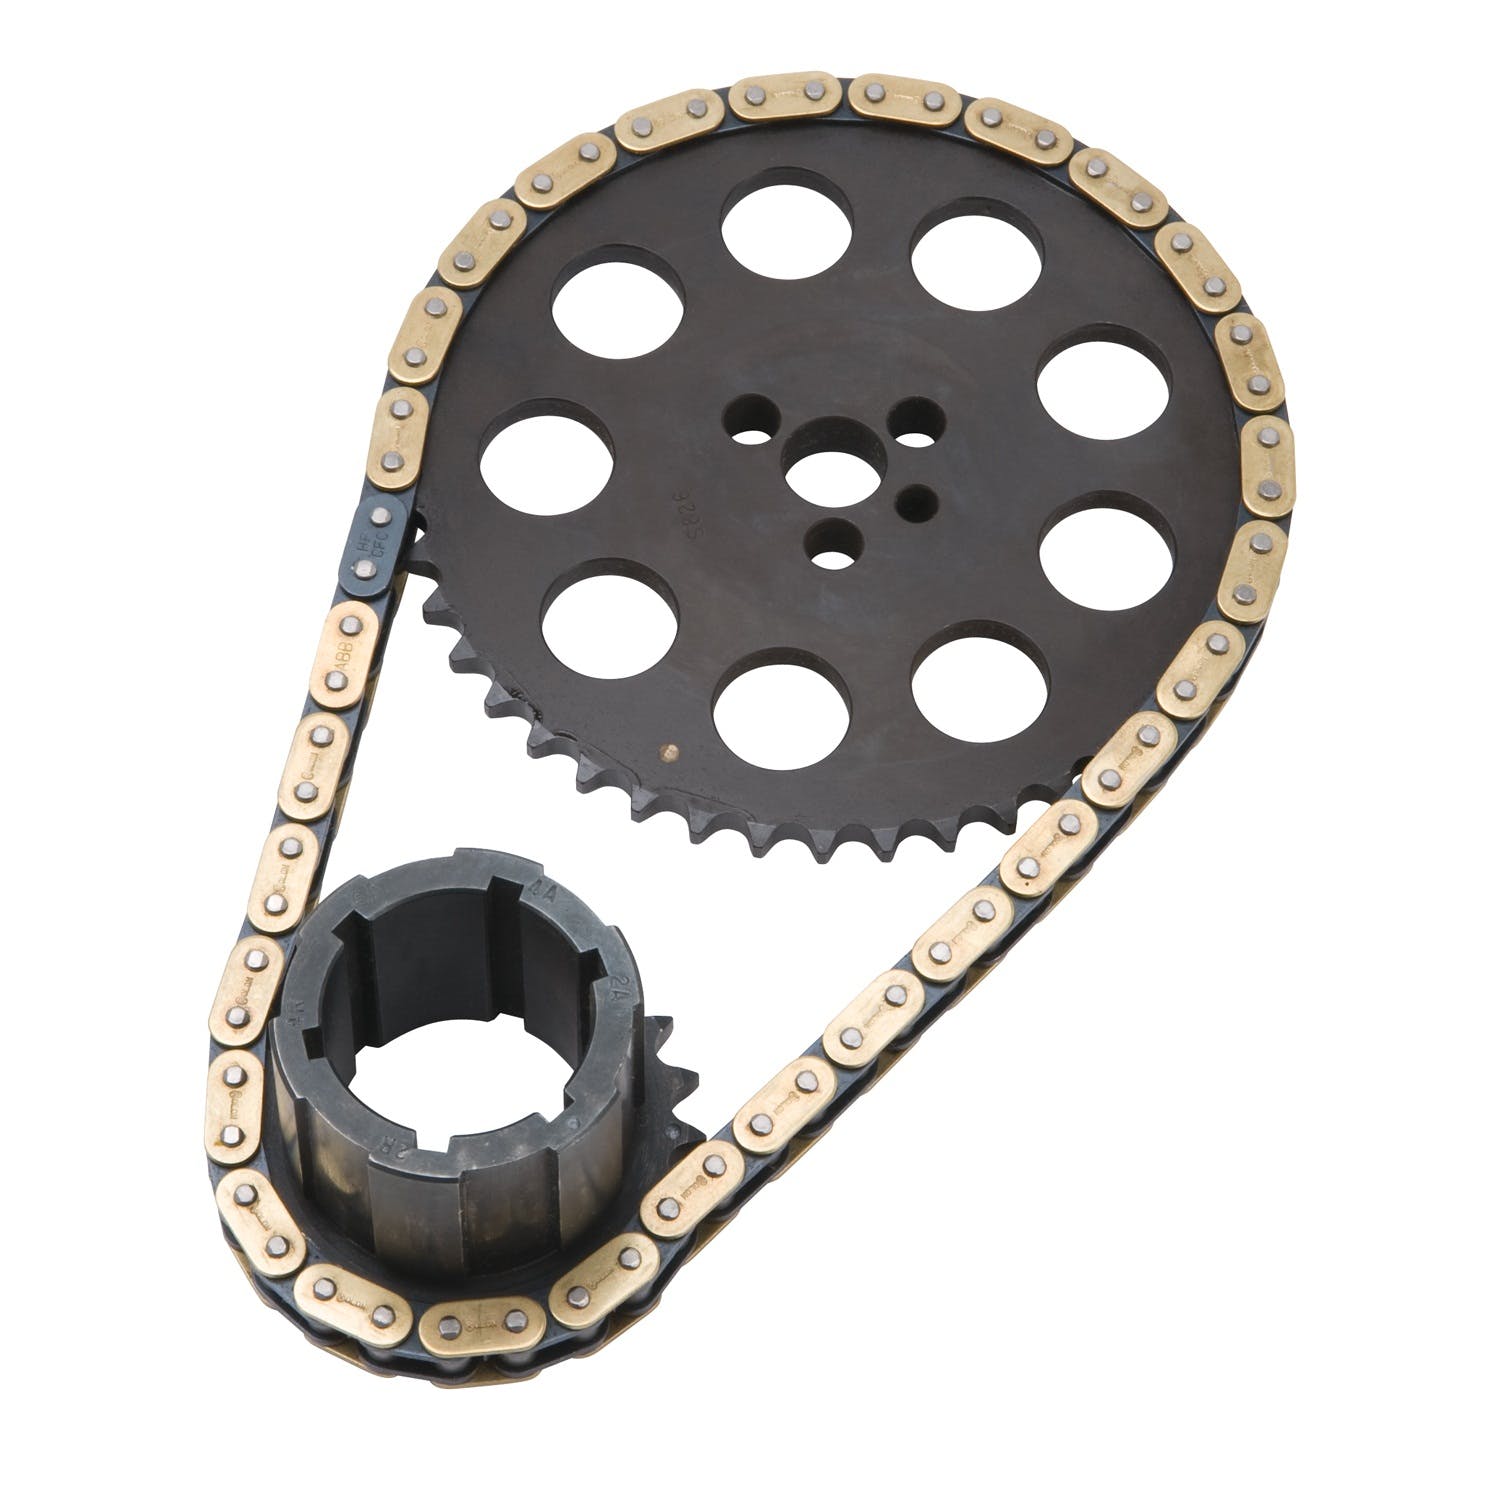 Edelbrock 7343 RPM-Link Adjustable True-Roller Timing Chain Set